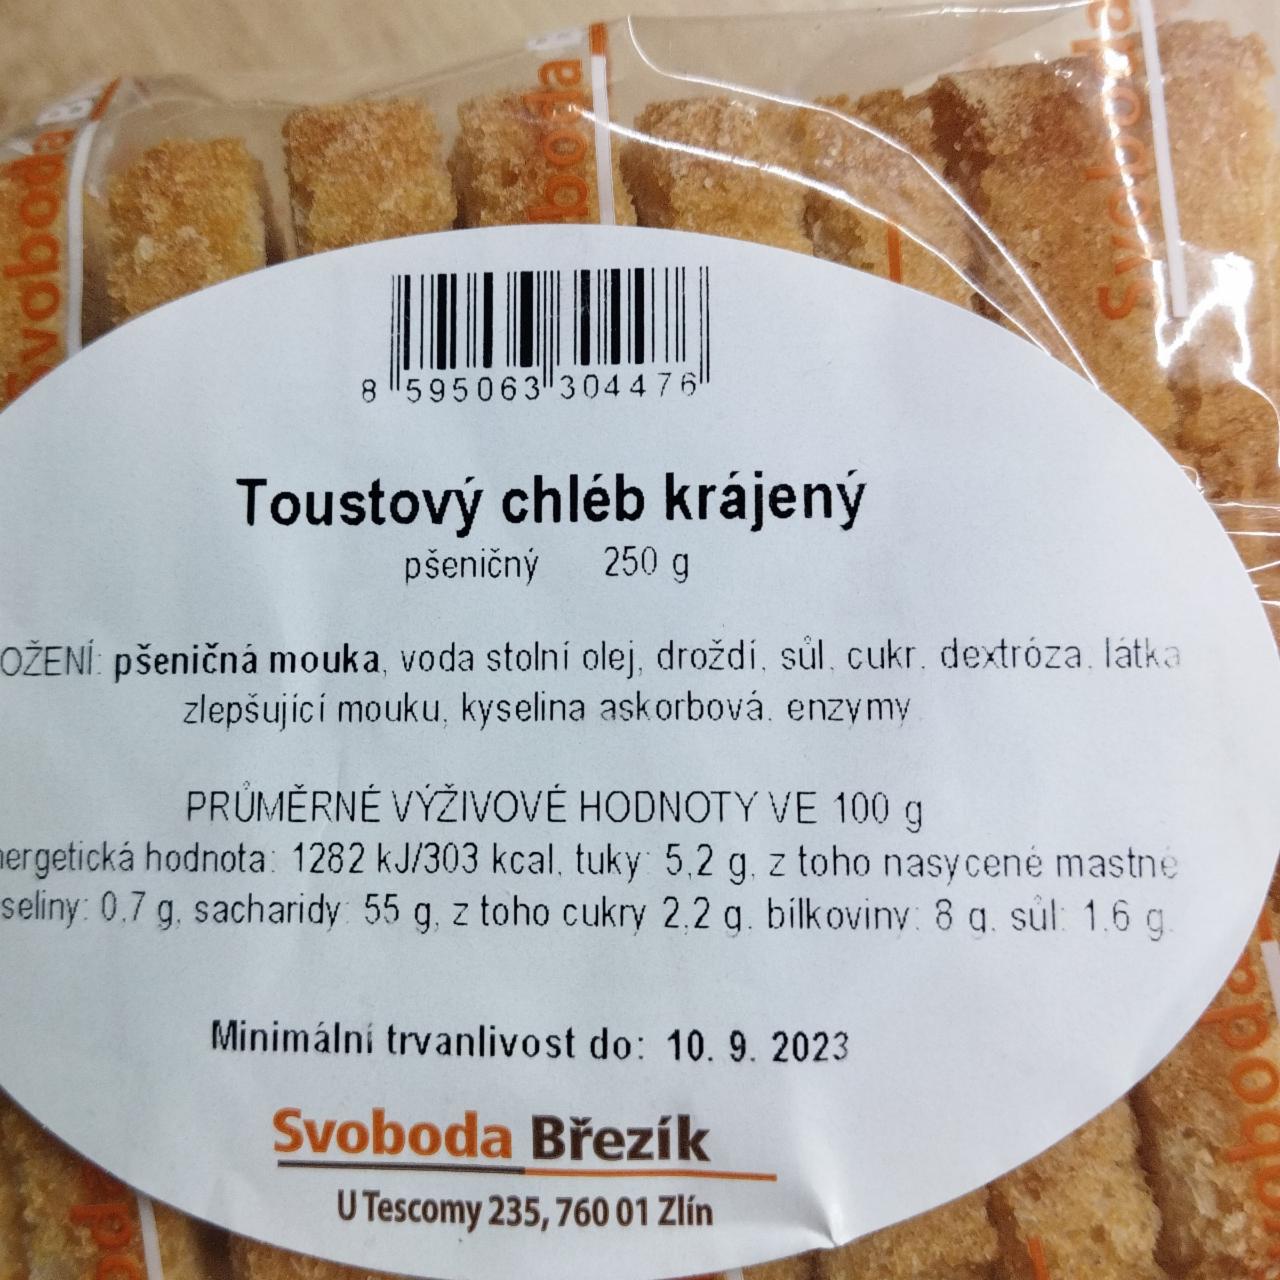 Fotografie - Toustový chléb krájený Svoboda Březík